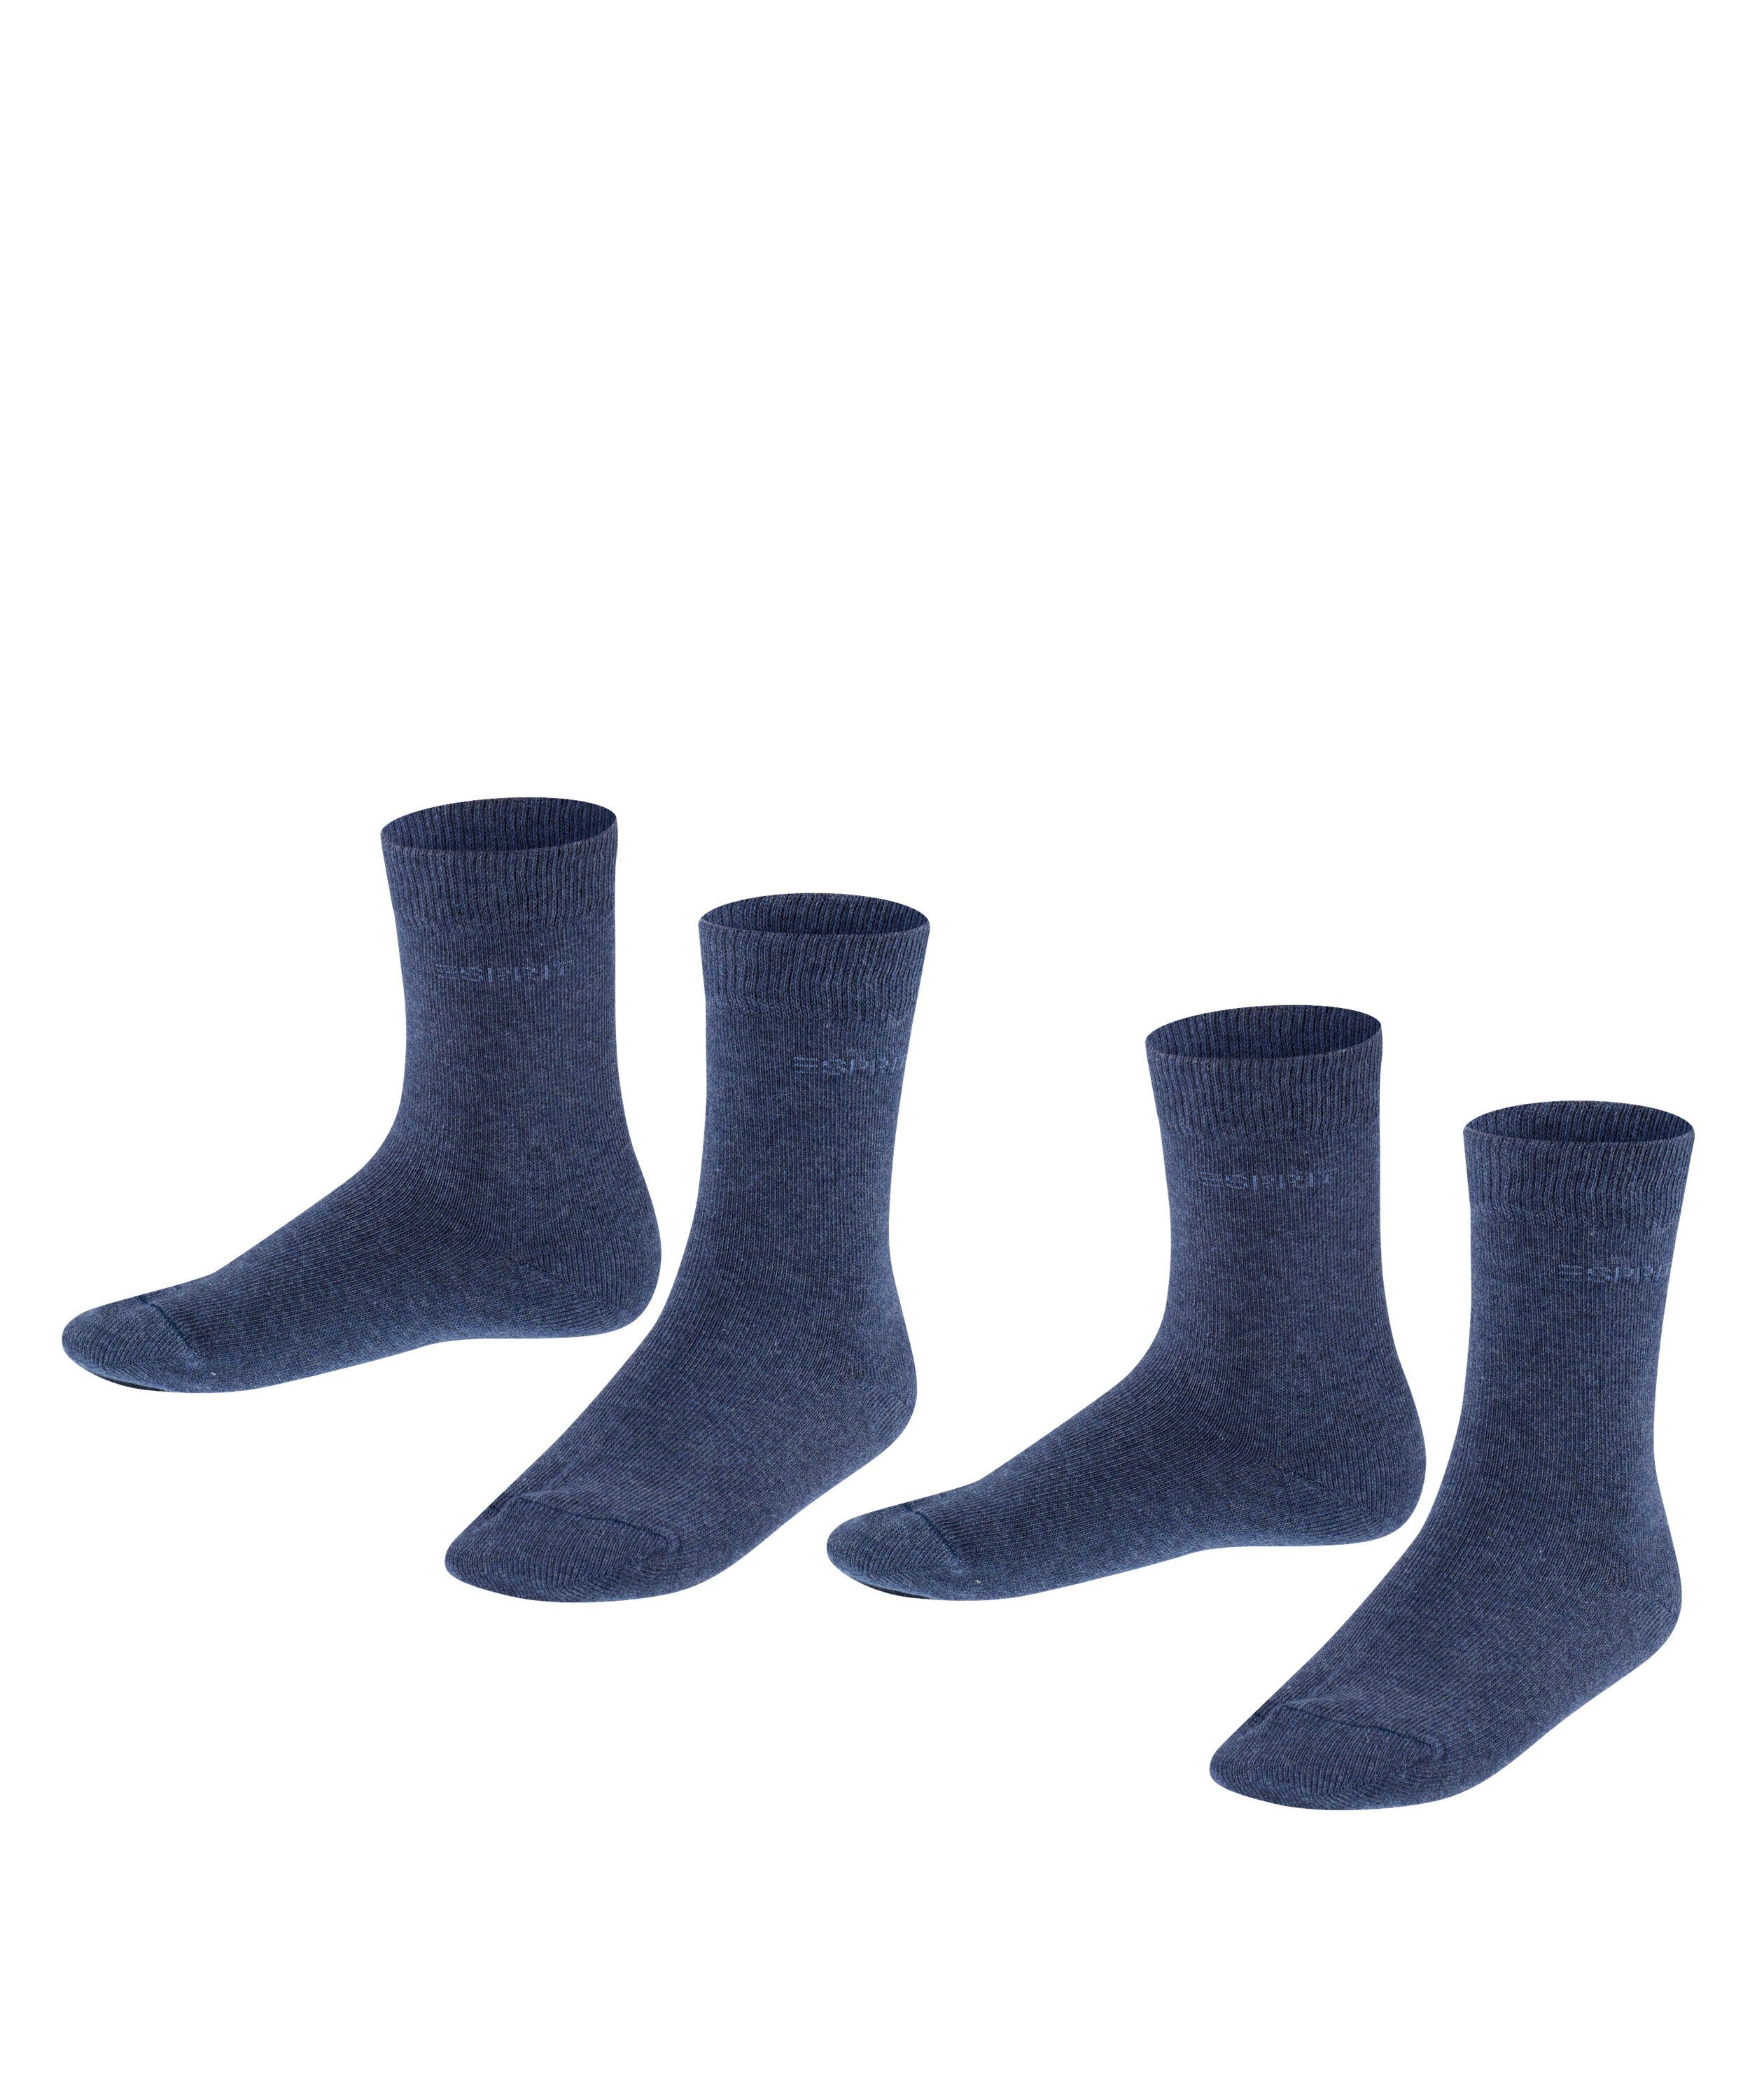 Esprit Socken Foot Logo 2-Pack (2-Paar) navyblue m (6490)